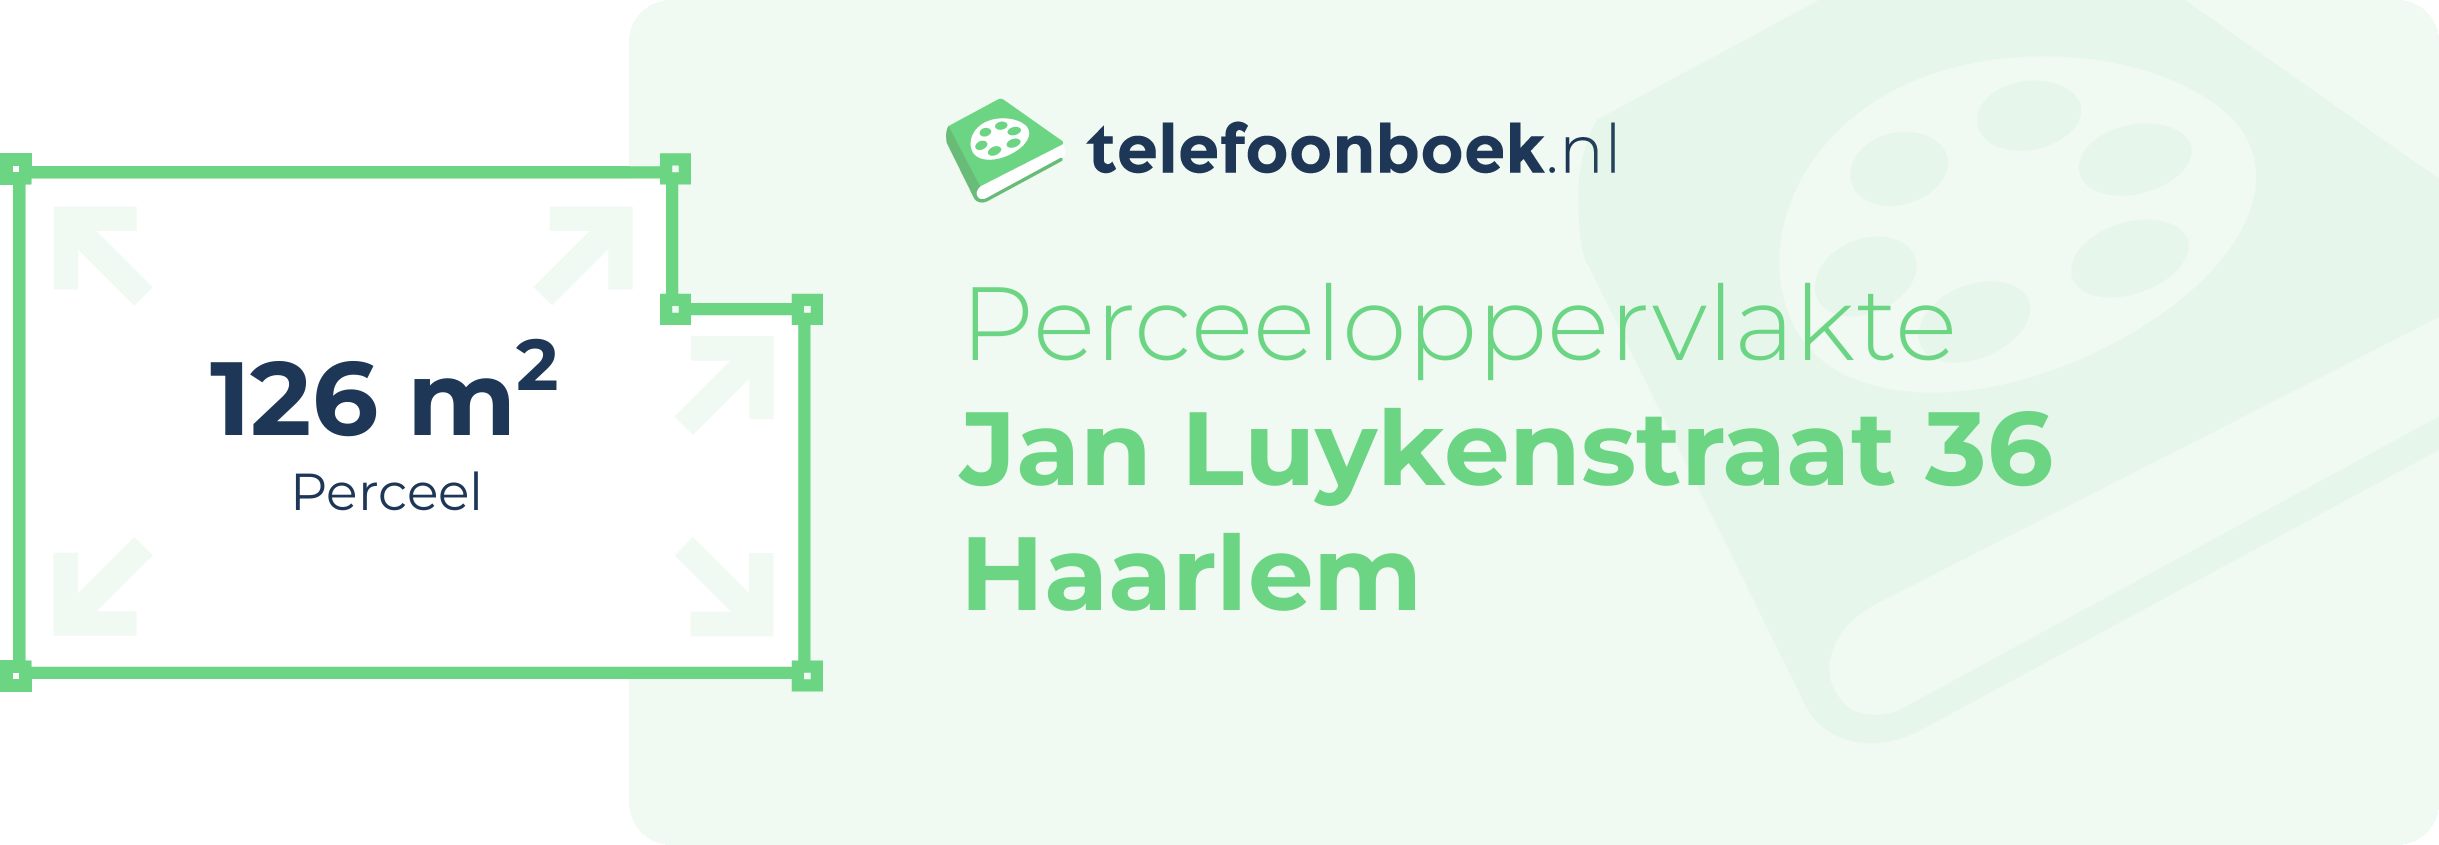 Perceeloppervlakte Jan Luykenstraat 36 Haarlem